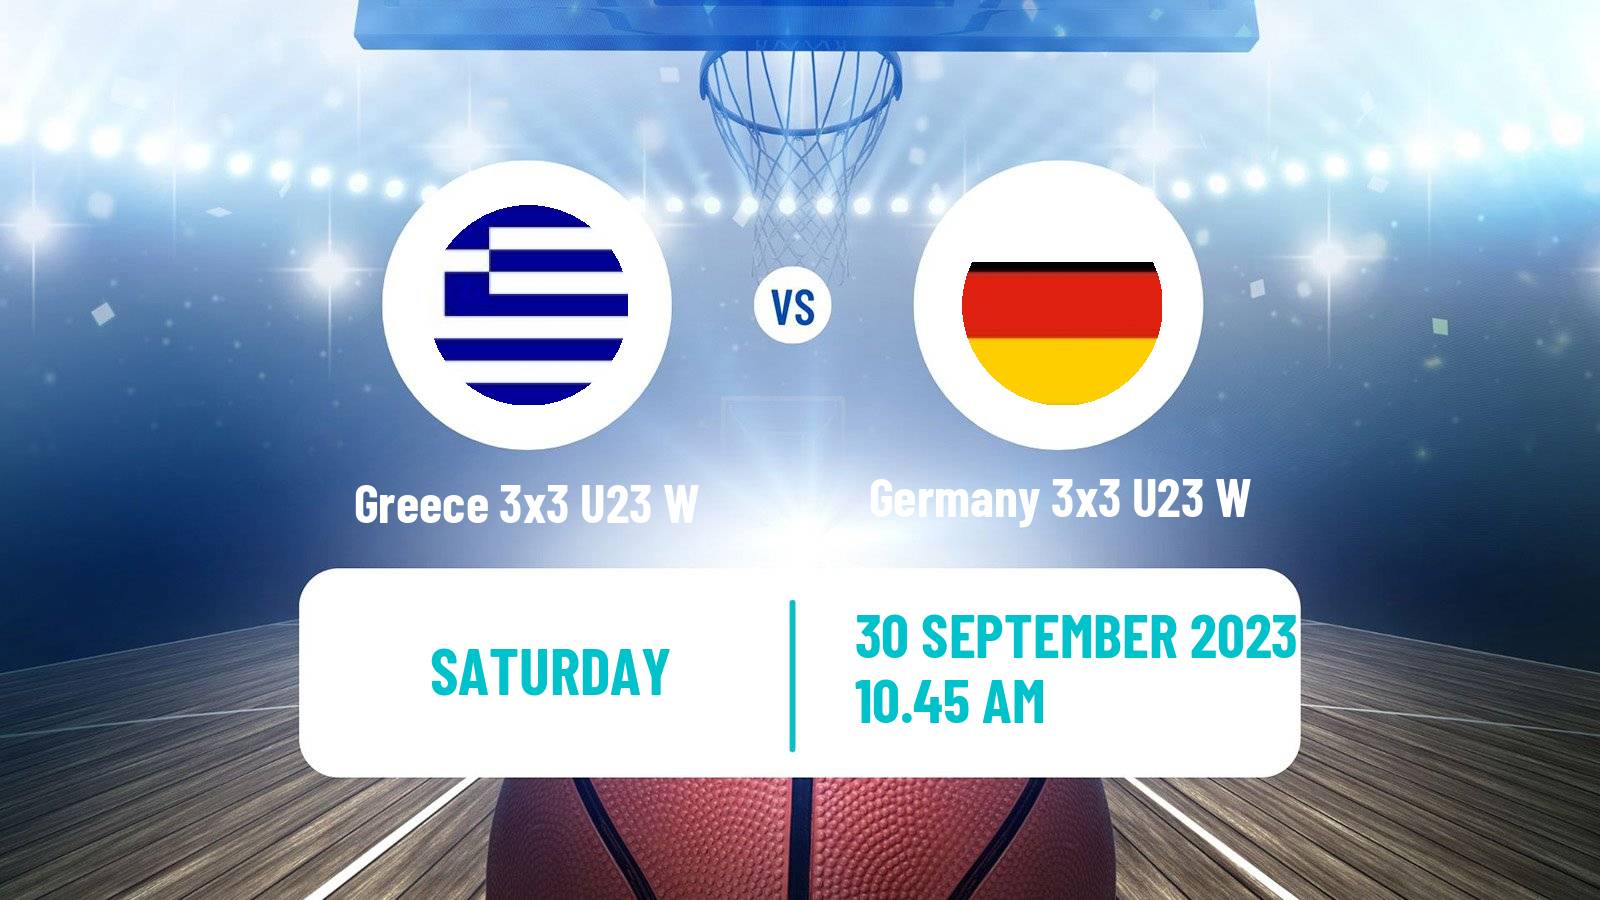 Basketball World Cup Basketball 3x3 U23 Women Greece 3x3 U23 W - Germany 3x3 U23 W